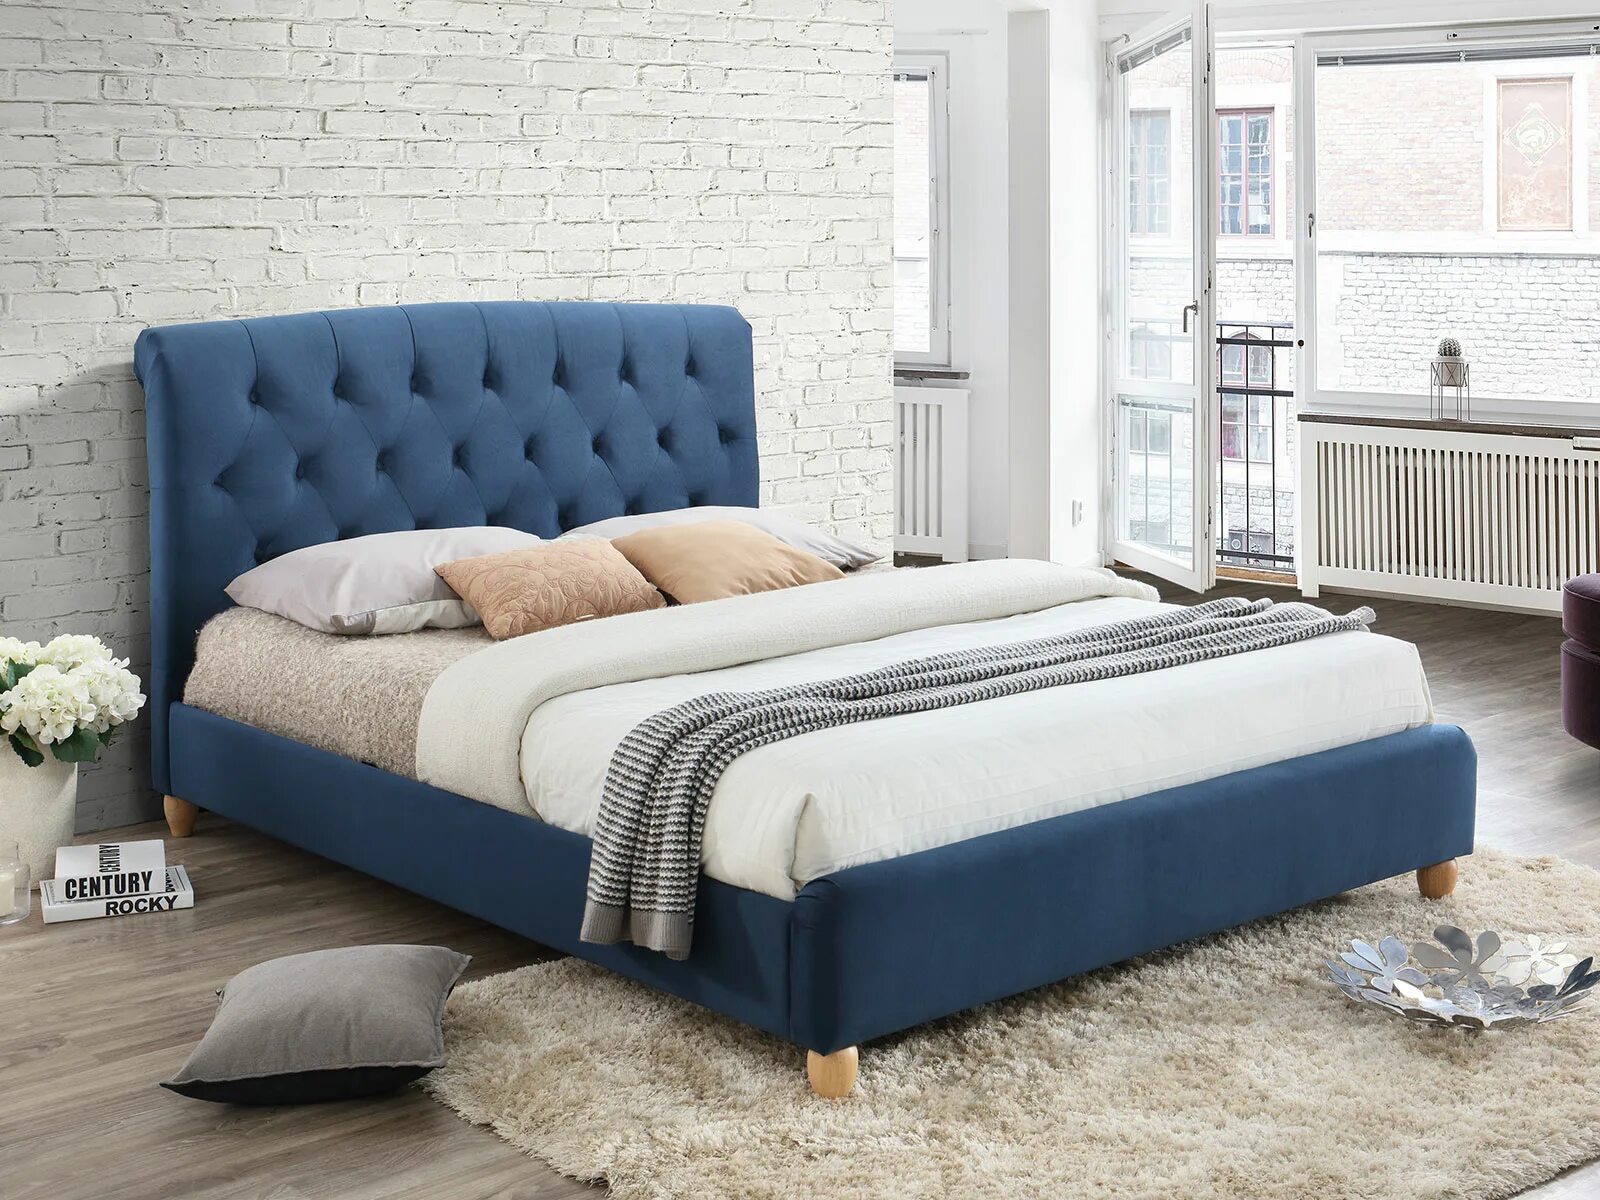 АТ-126 кровать. Современные кровати Кинг сайз. Кровать синяя двуспальная. Кровать одиночная.